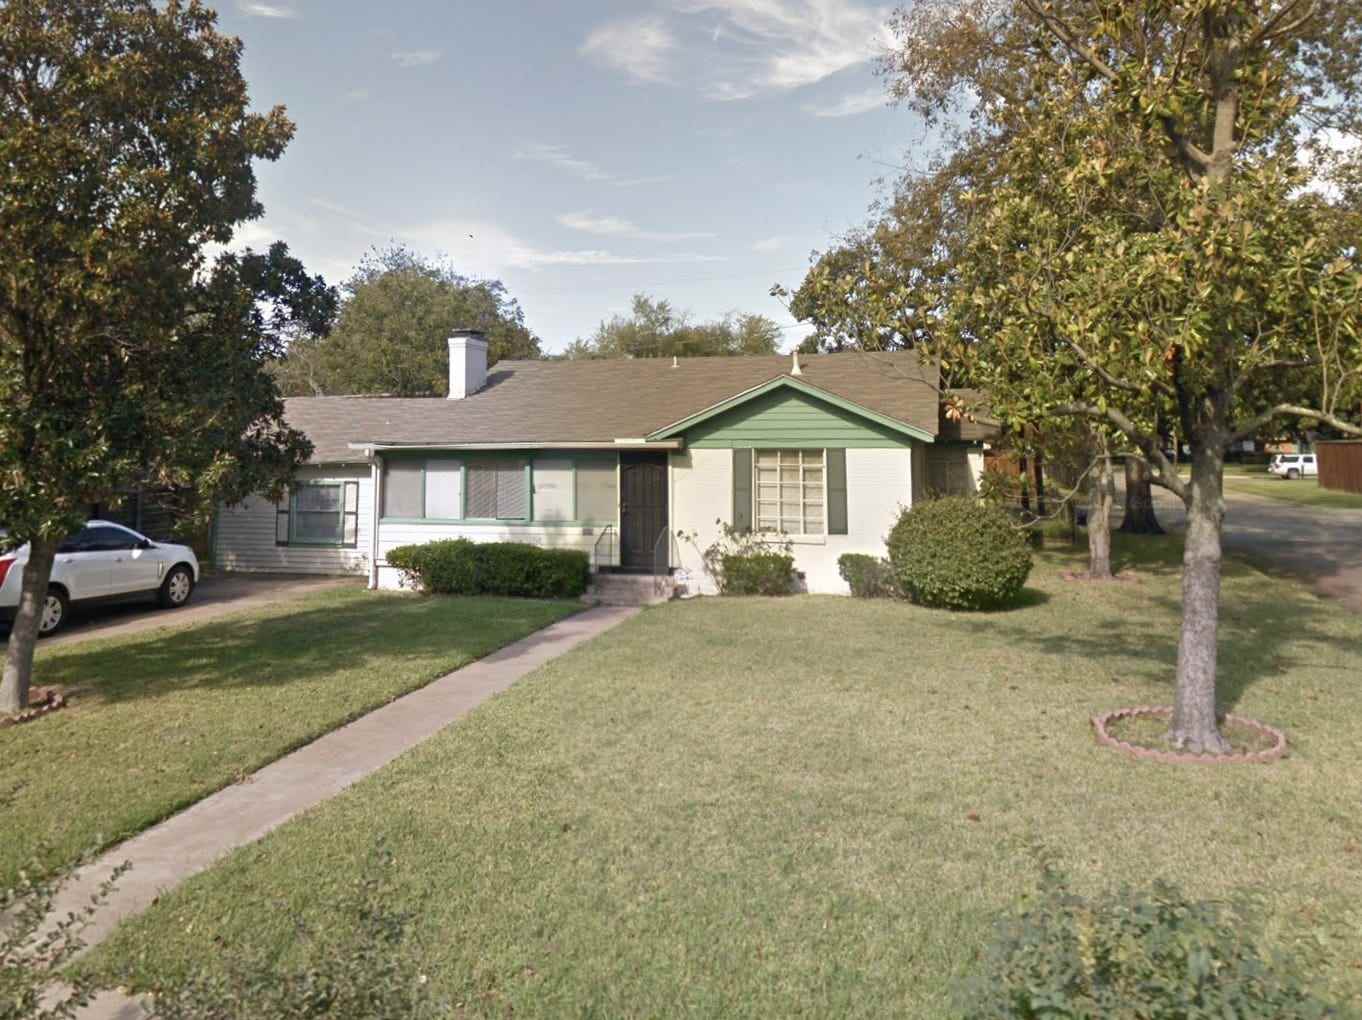 Ein Google Maps-Screenshot des vorherigen Hauses auf dem Grundstück.